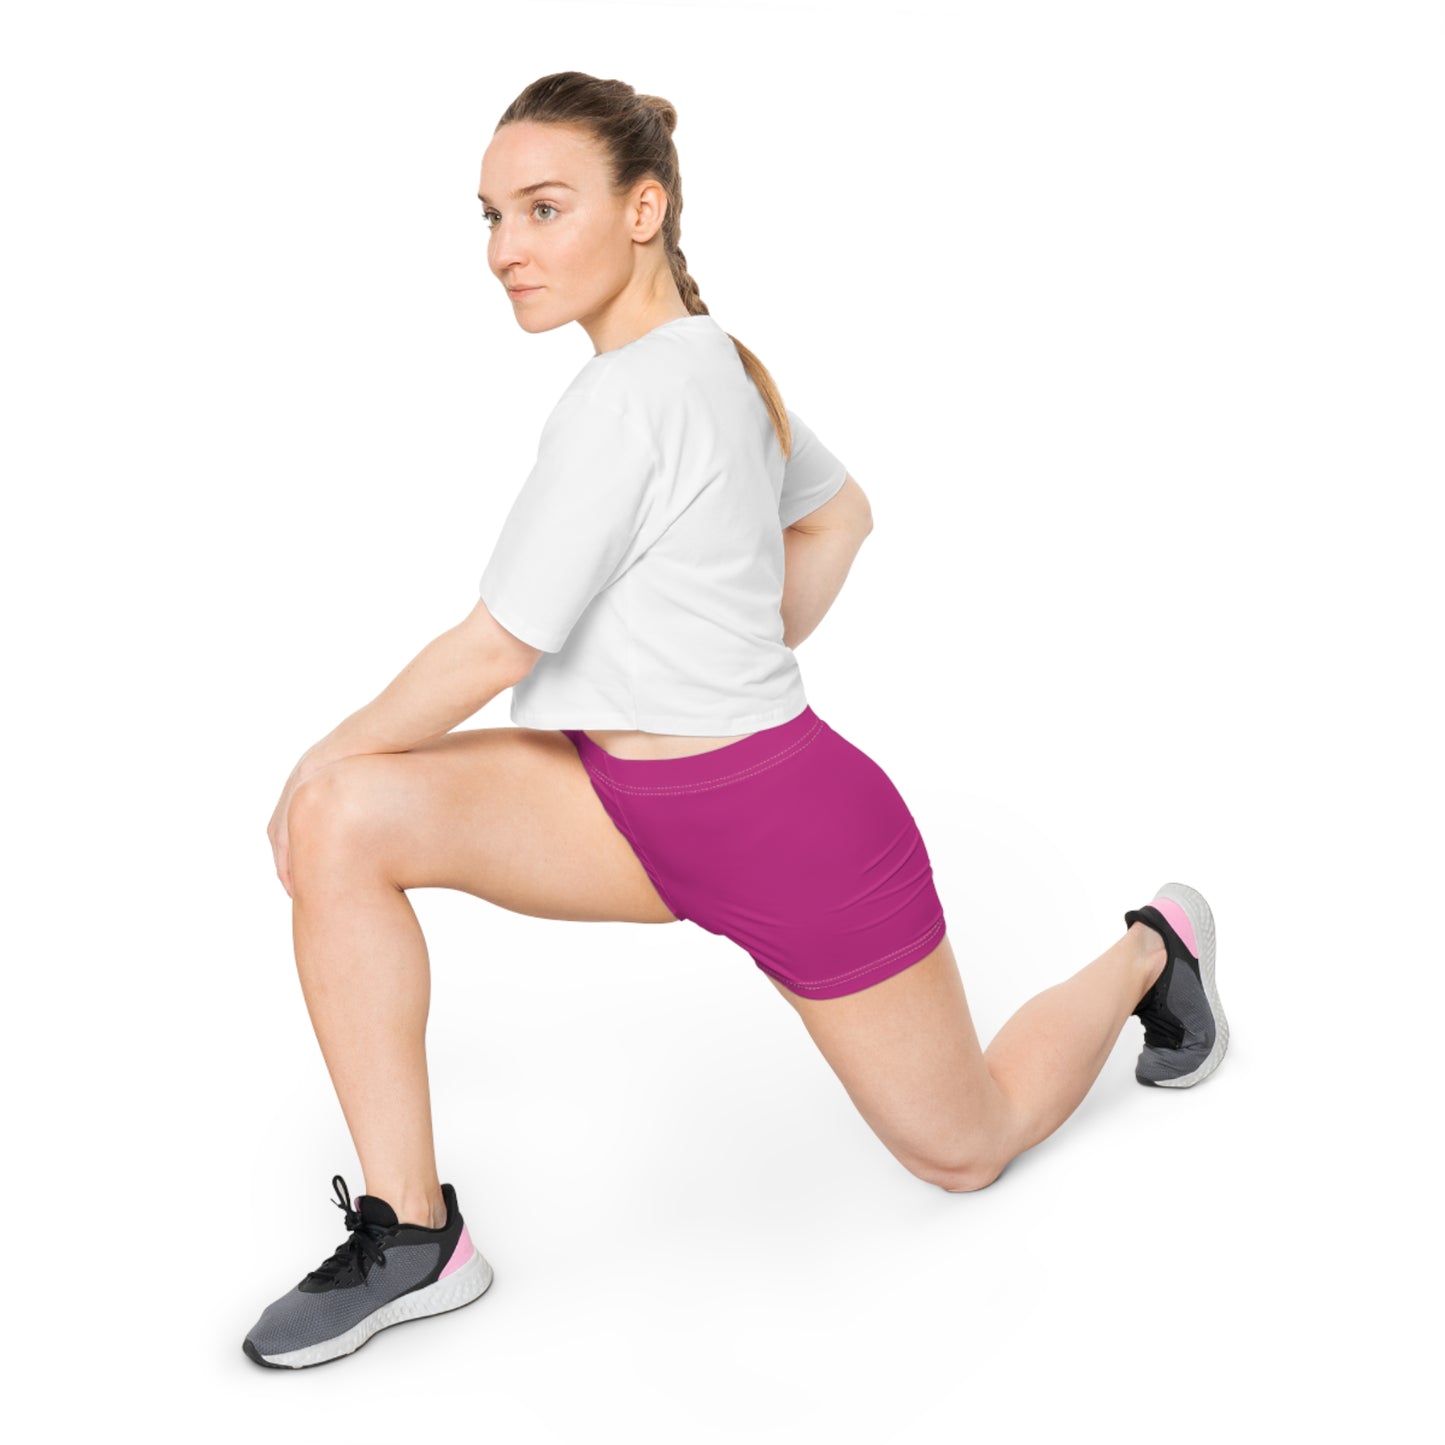 AlphaChic Workout Shorts - Pink (Leg Logo)